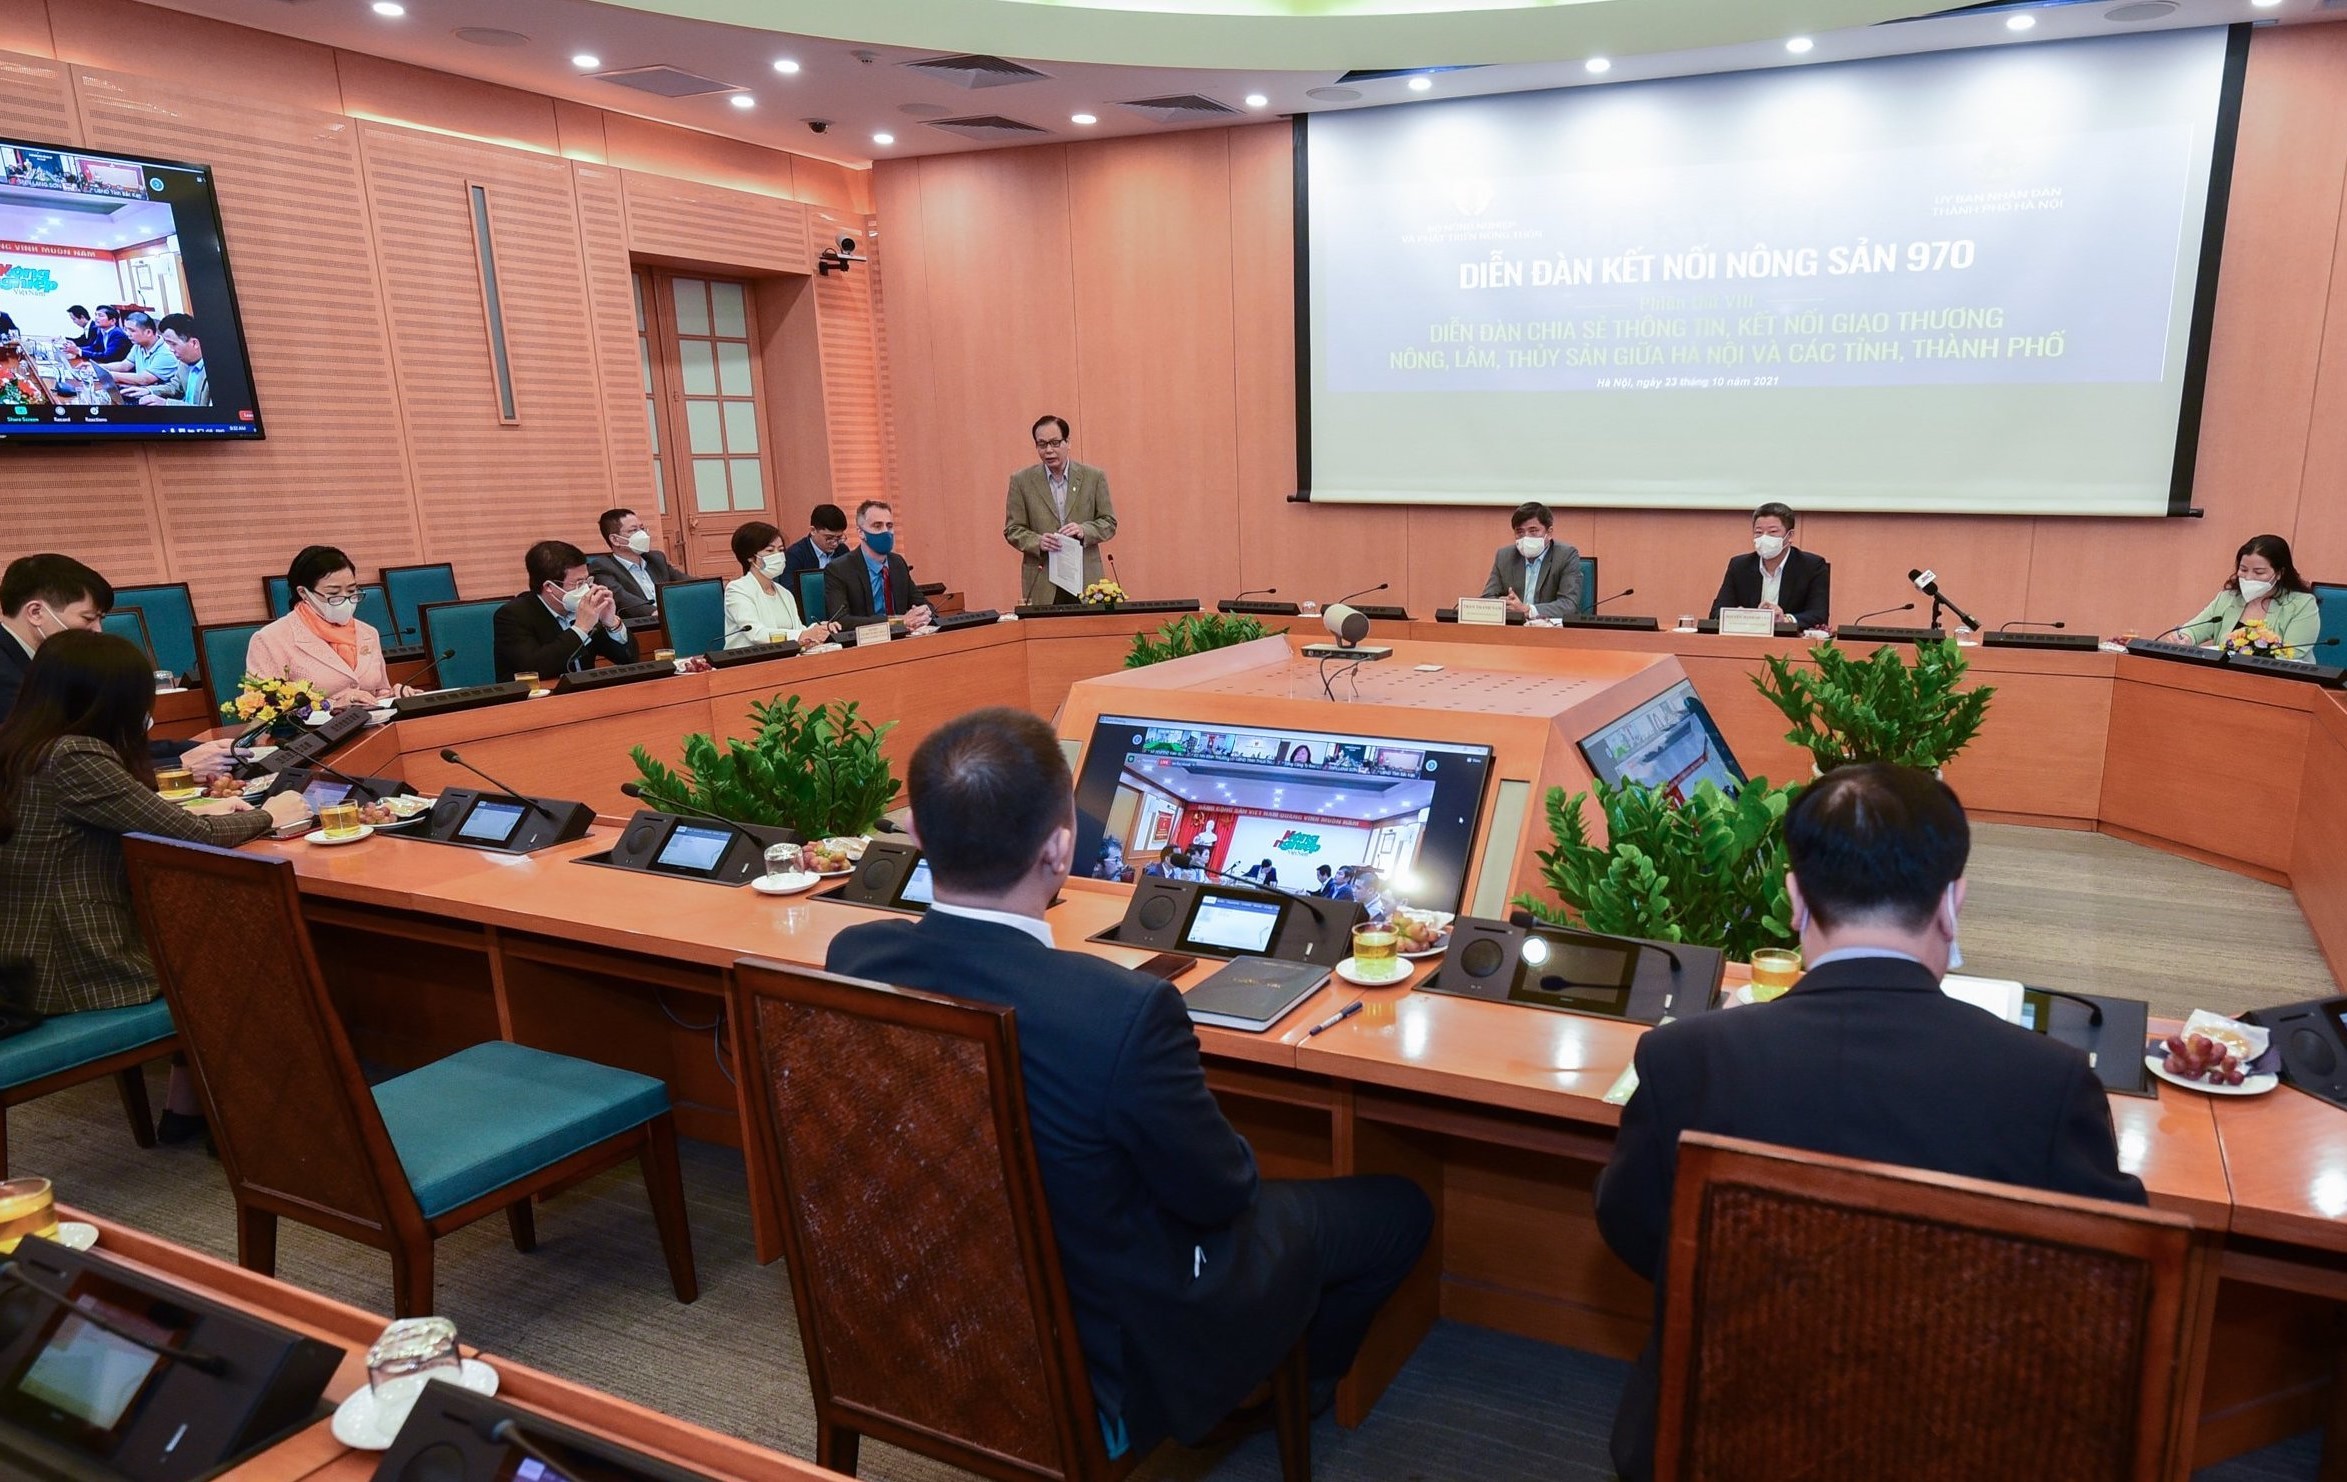 Kết nối nông sản các địa phương tới Hà Nội, ngày 23/10 đã có 30 giao dịch có kết quả